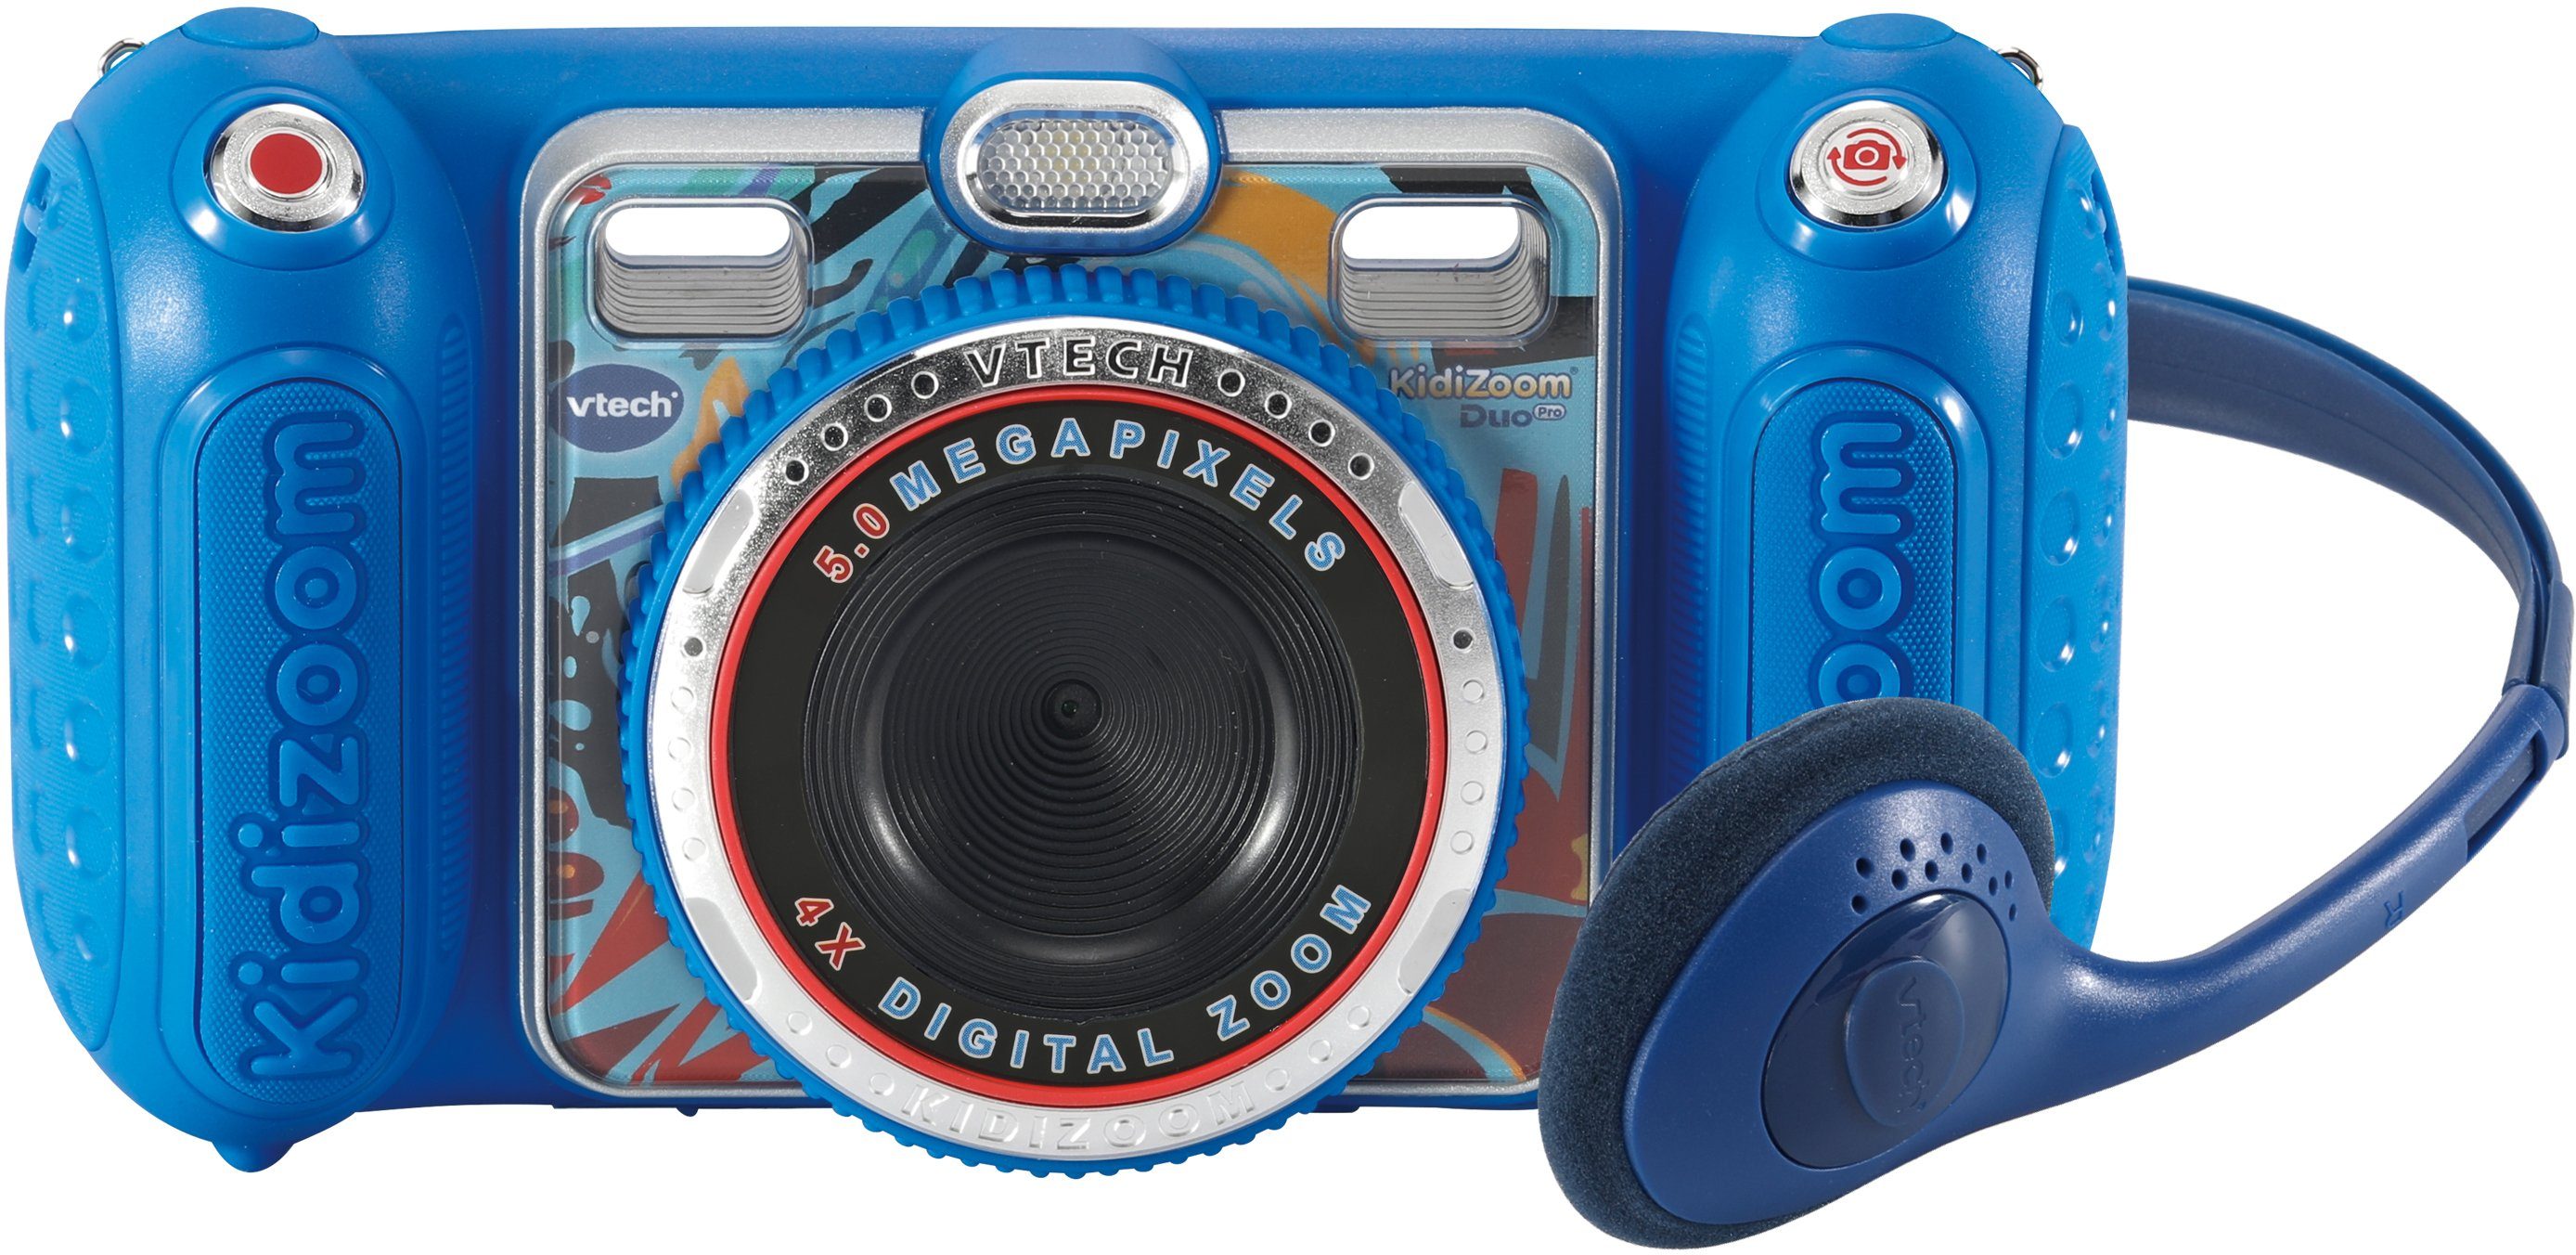 Vtech® KidiZoom Duo Pro Kinderkamera (inkluisve Kopfhörer) blau | Spielzeug-Kameras